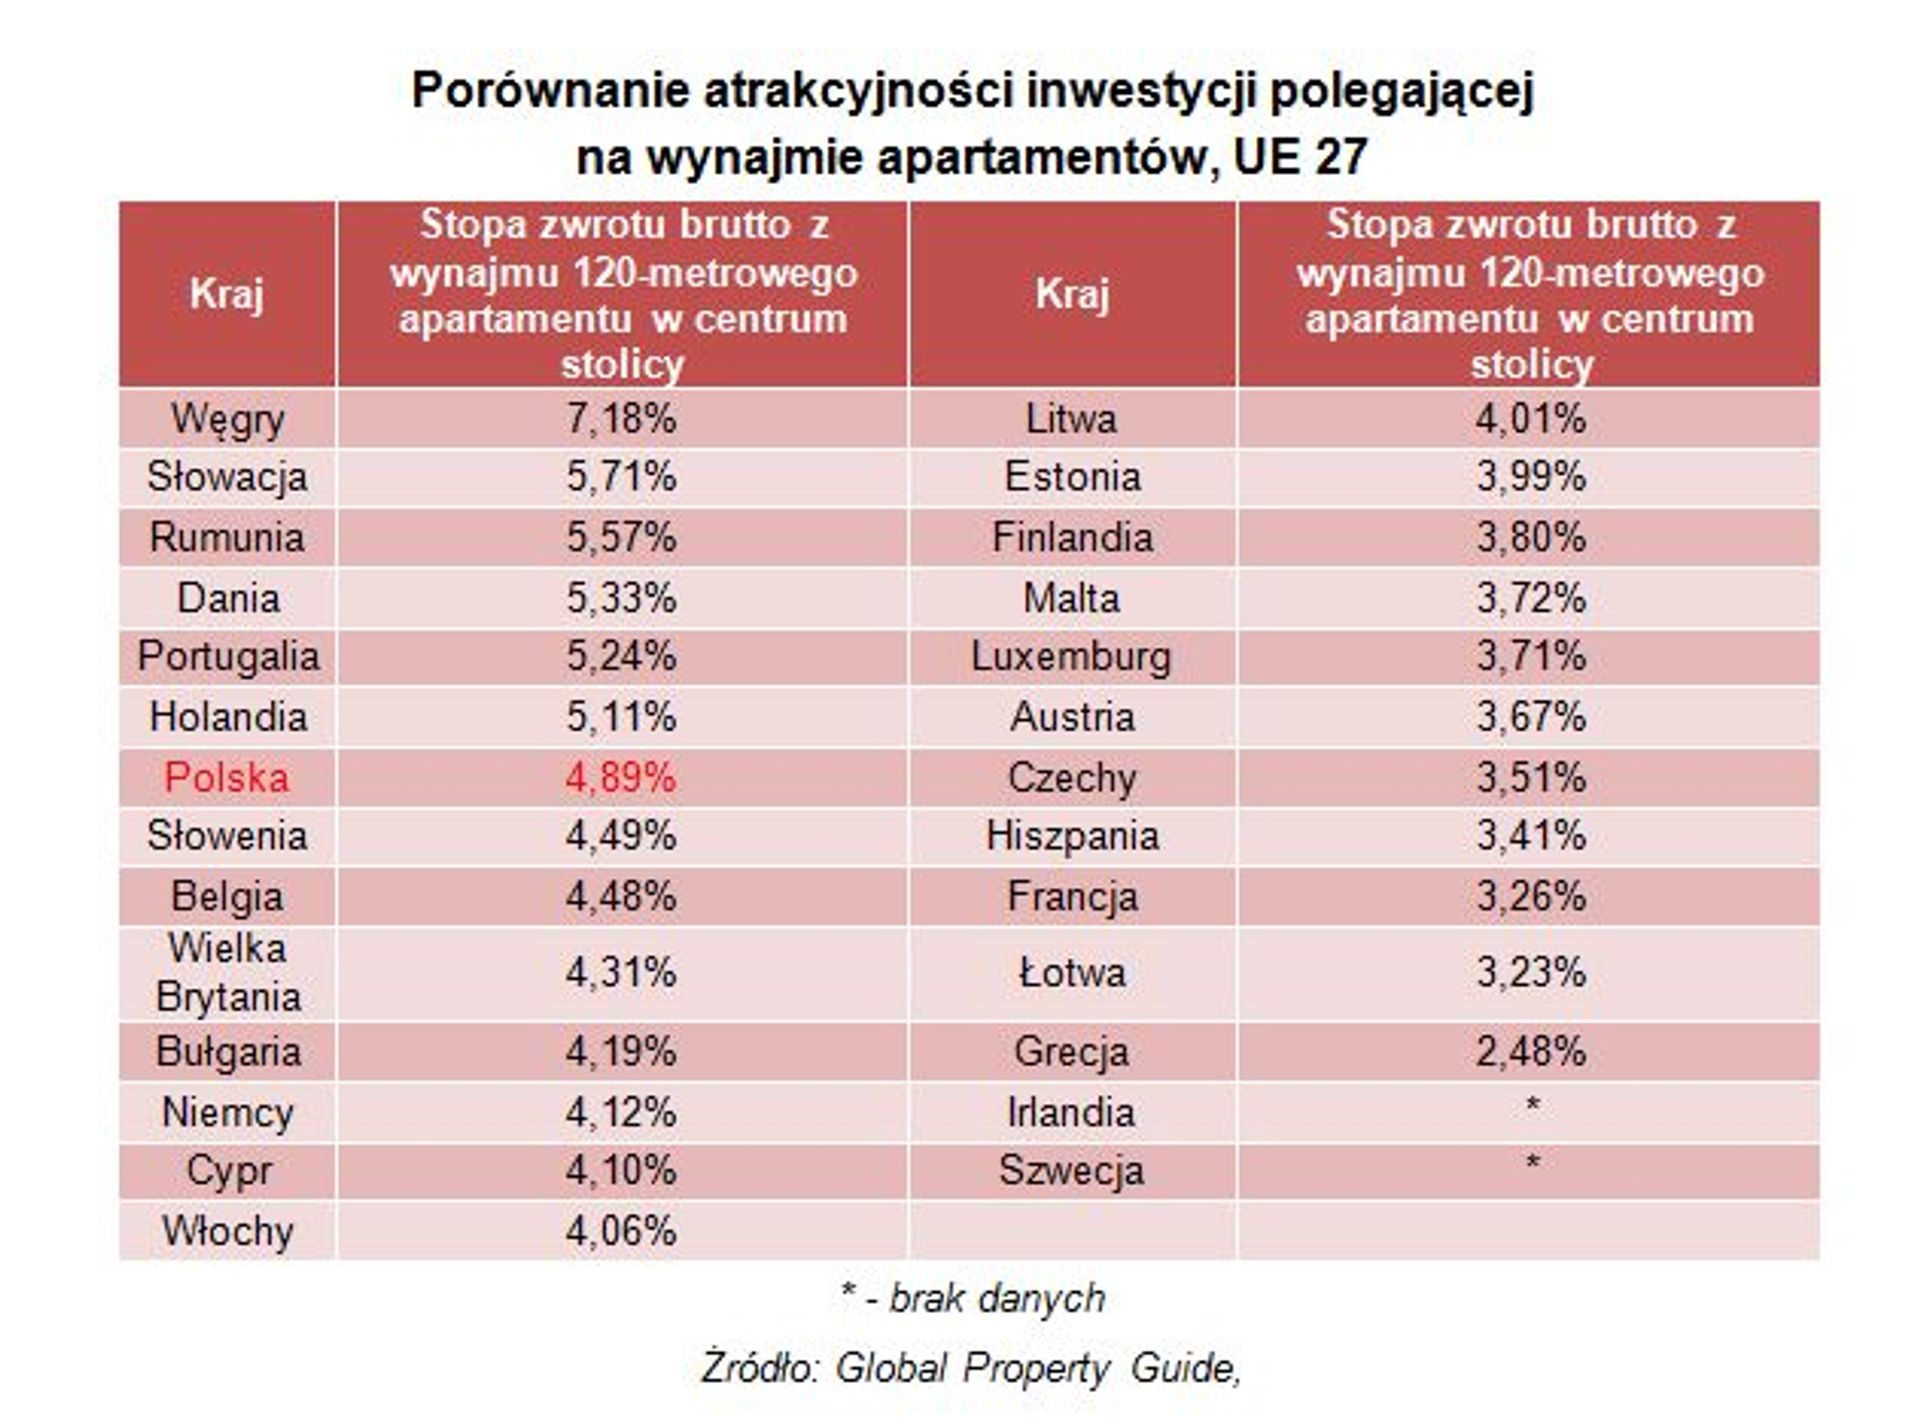 Czy polski rynek mieszkaniowy jest atrakcyjny na tle Europy?